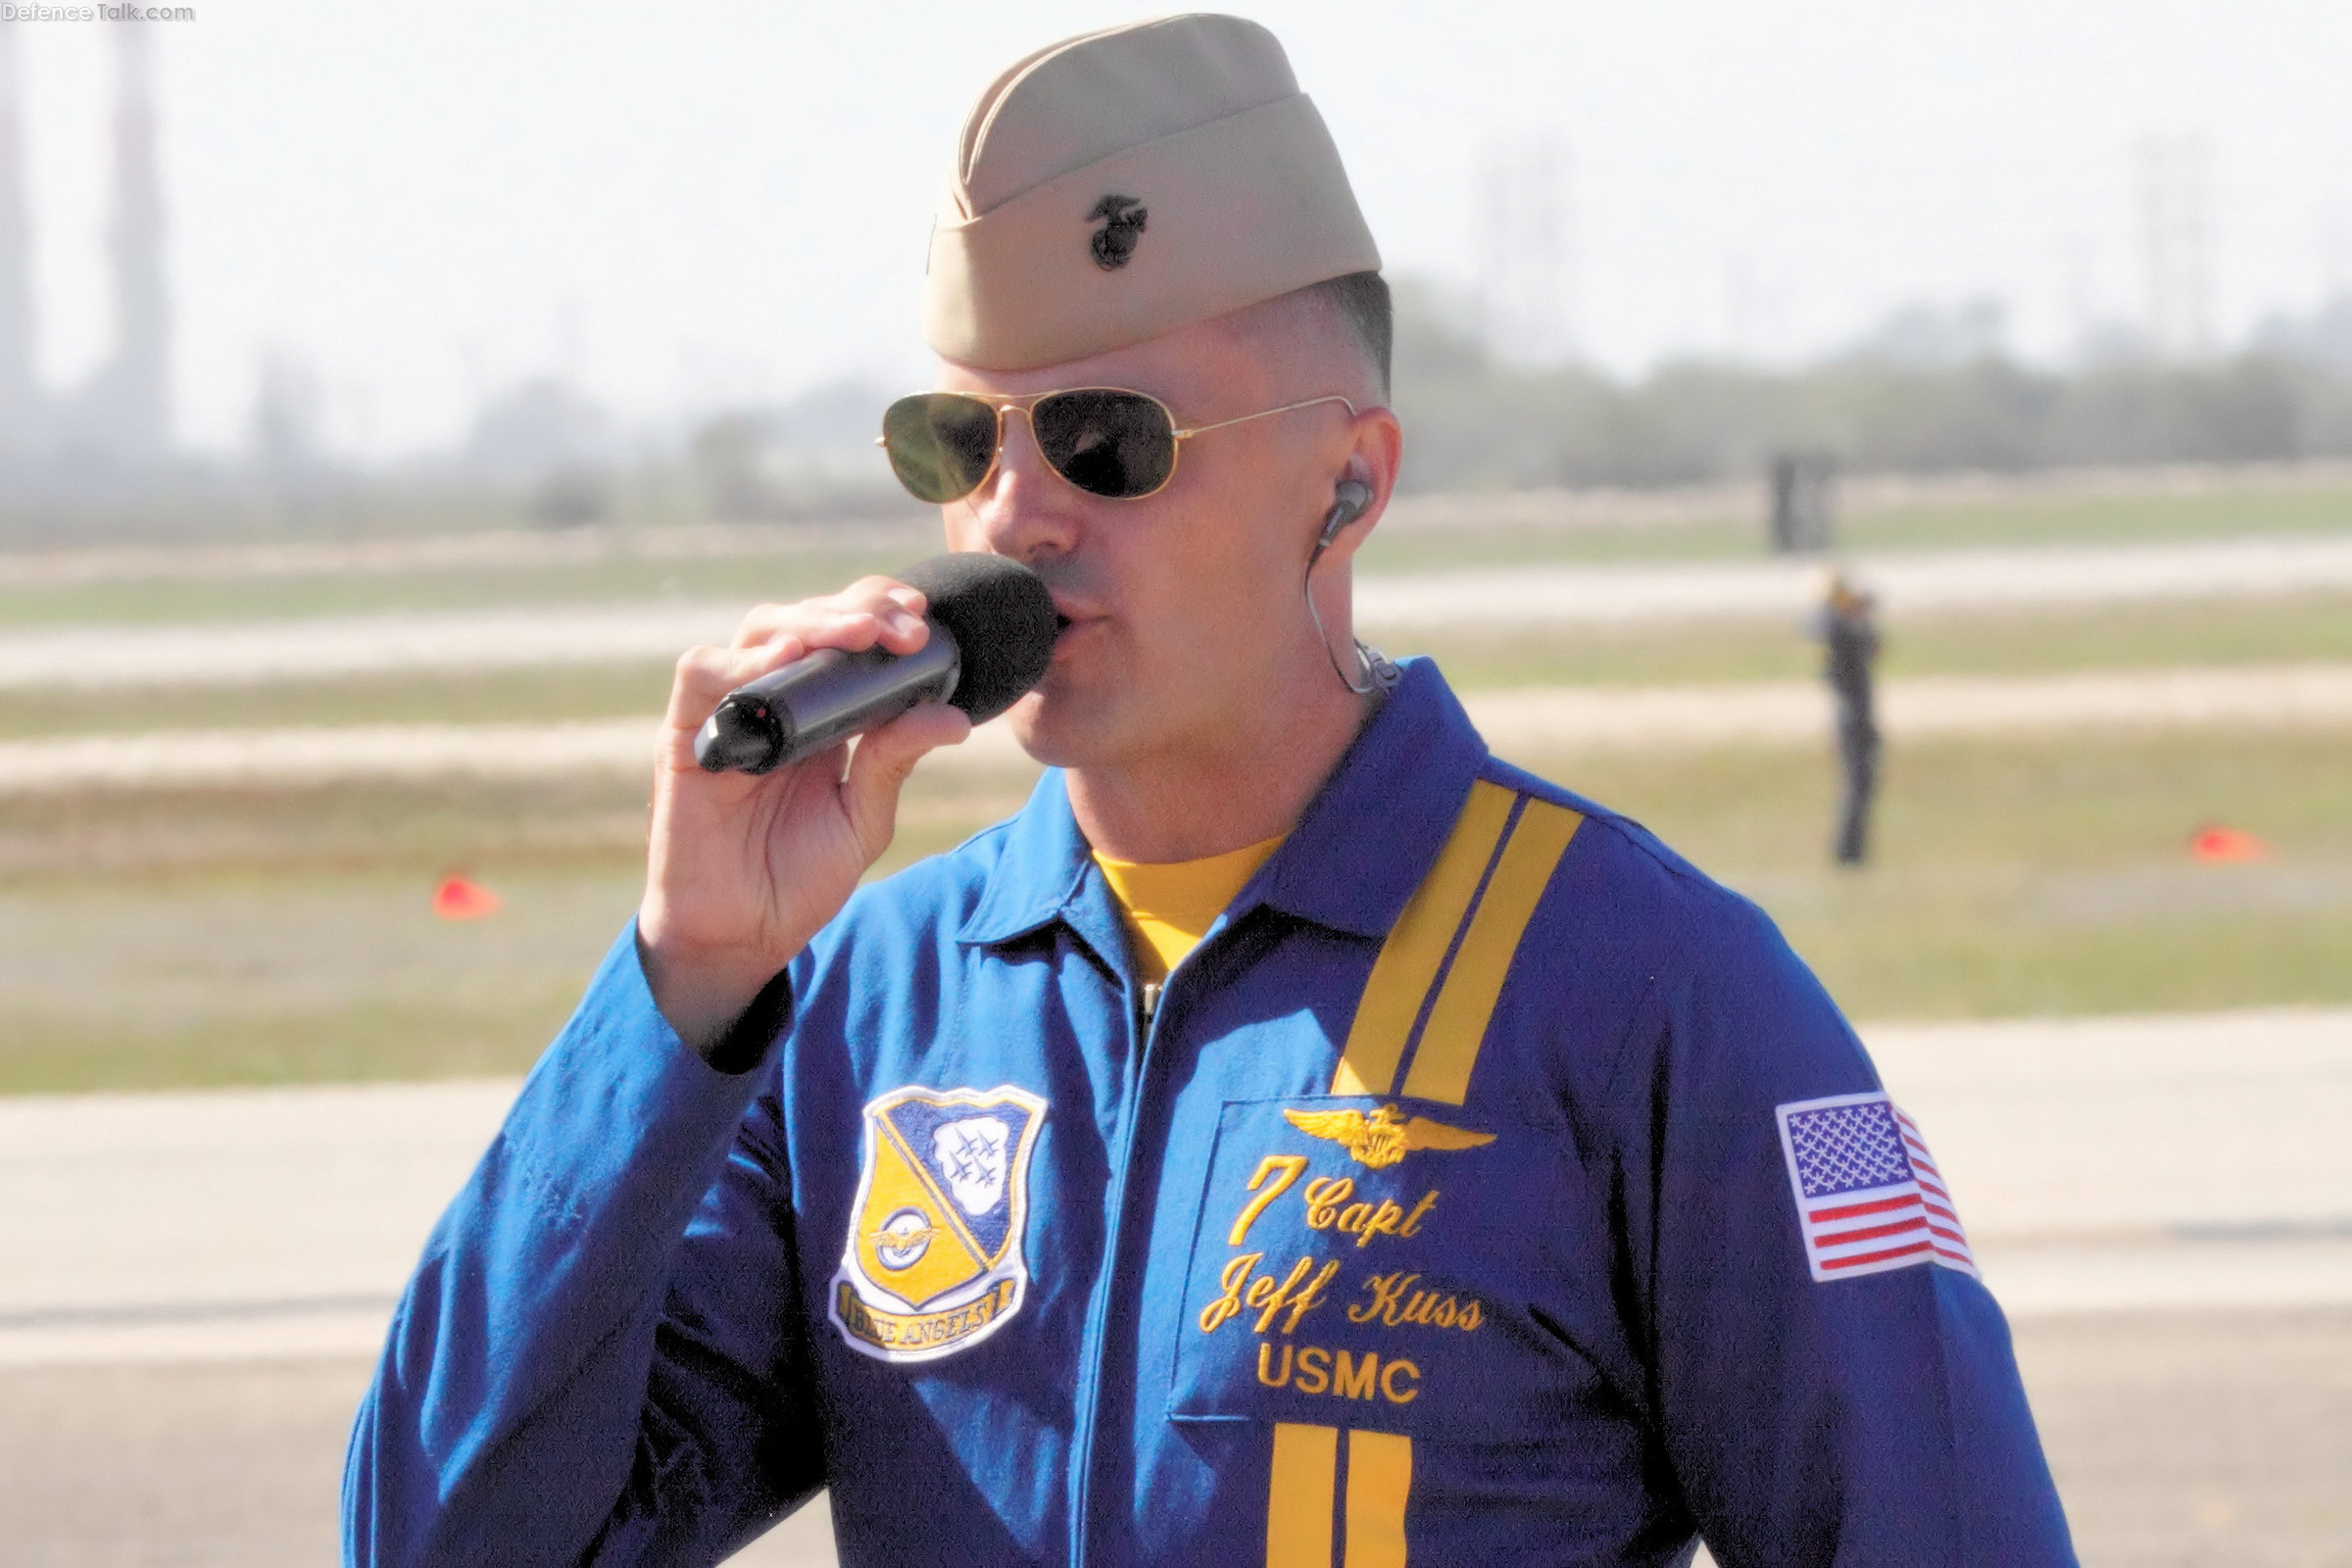 Capt. Jeff Kuss, USMC, Blue Angel